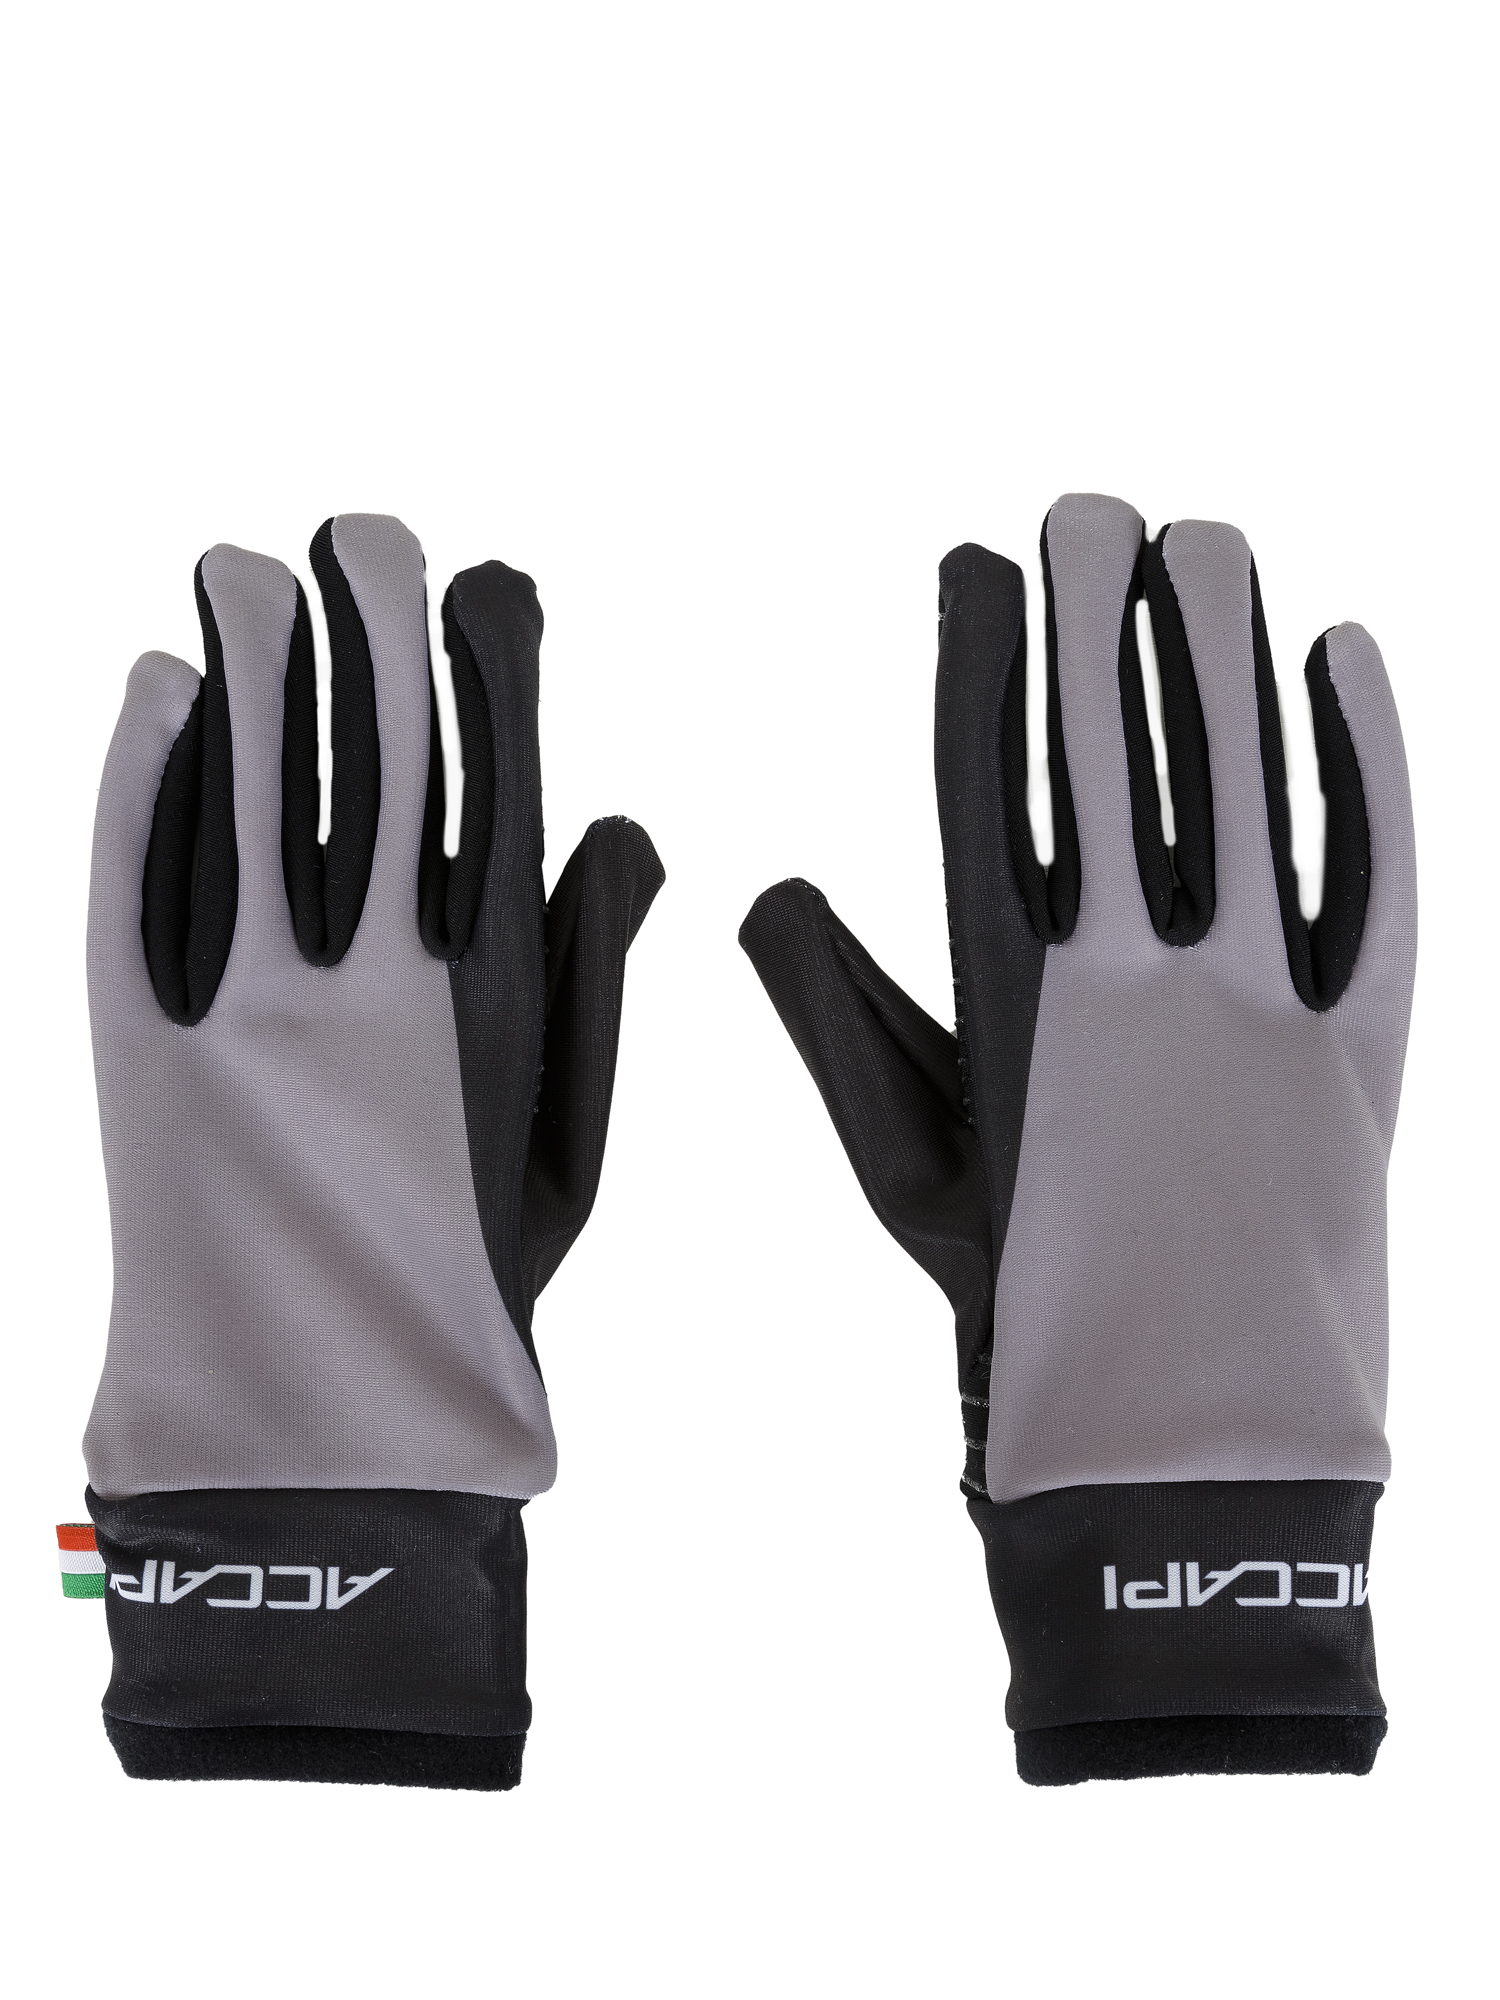 Перчатки Велосипедные Accapi Cycling Gloves Jr - Pistol Anthracite/Gray, XS